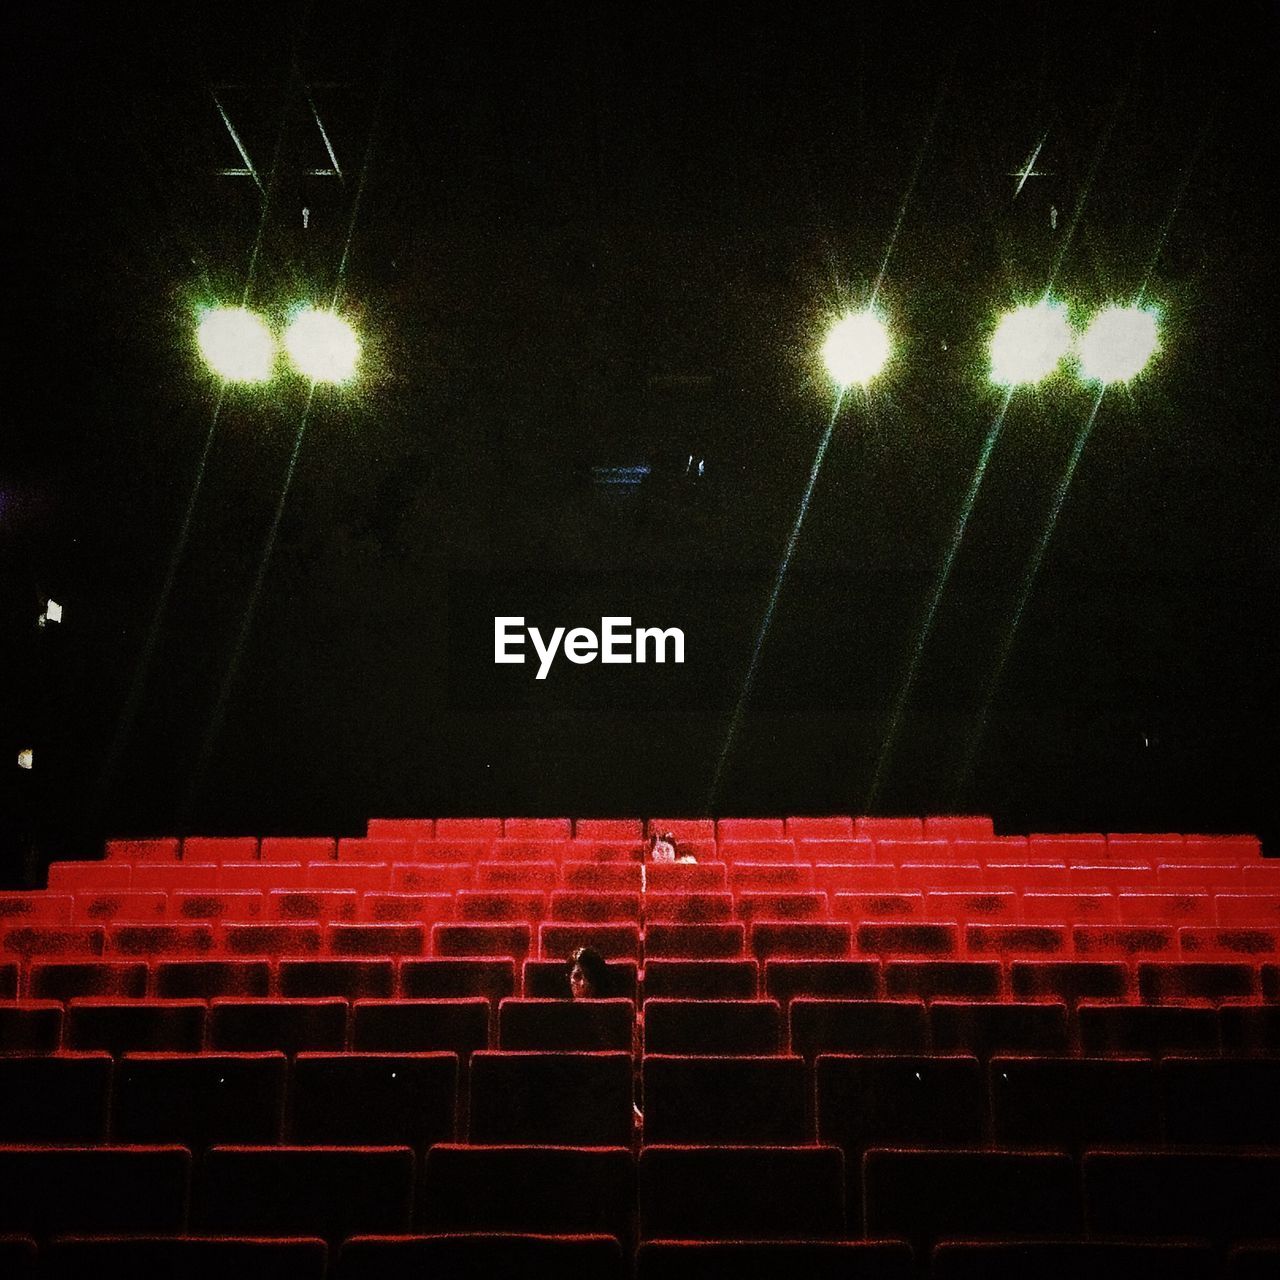 Illuminated movie theater